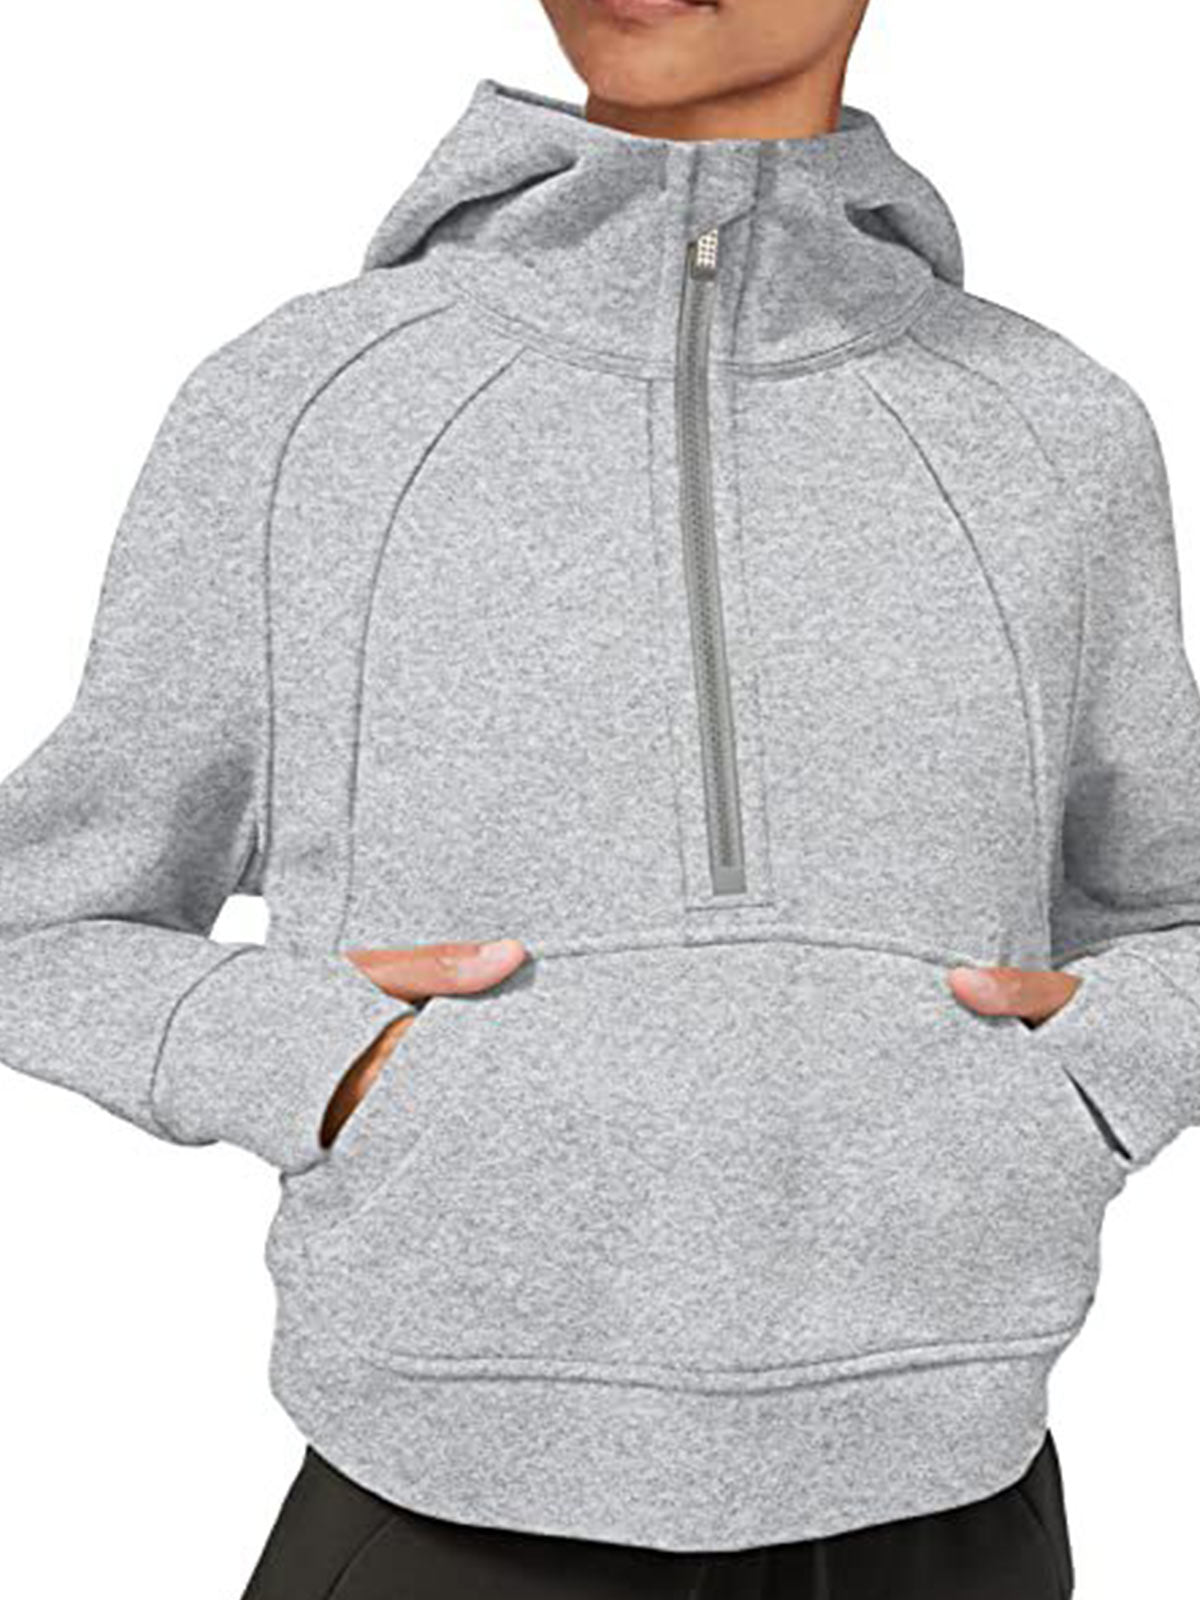 1/2 Zipper Sweatshirts with Kangaroo Pocket